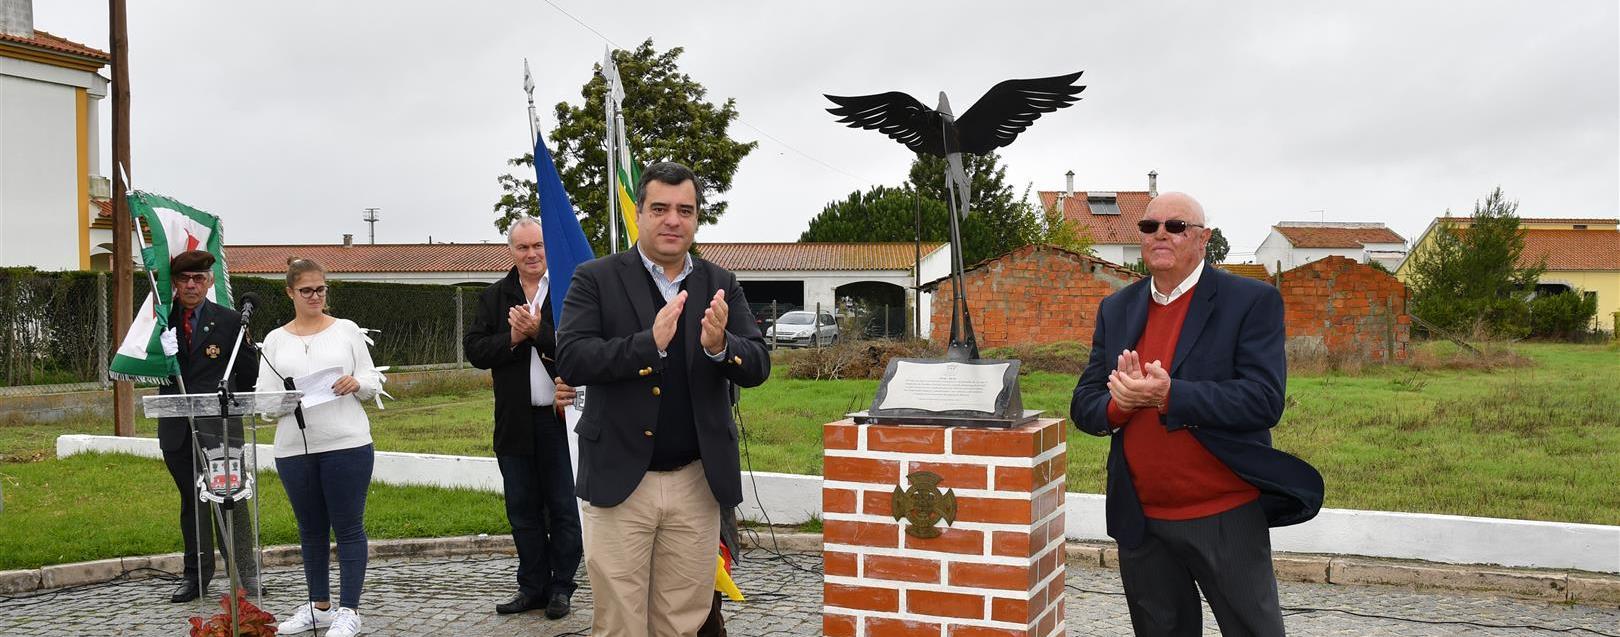 Sarilhos Grandes inaugura memorial em honra dos soldados portugueses